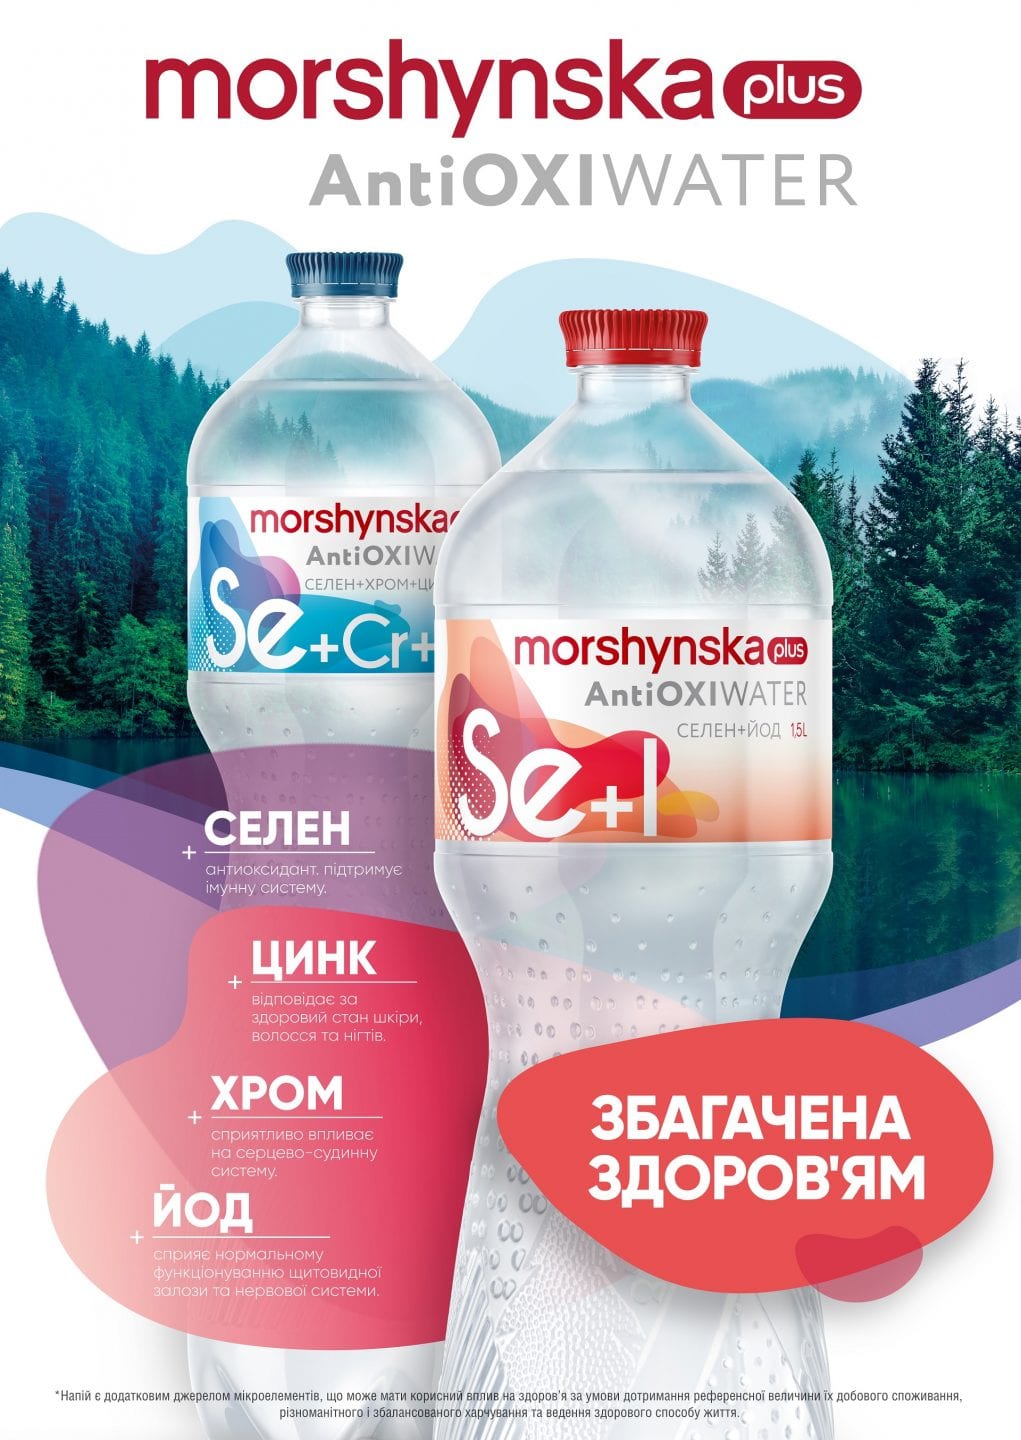 Компанія ІDS Borjomi Ukraine презентувала новинку — Morshynska plus AntiOxi Water